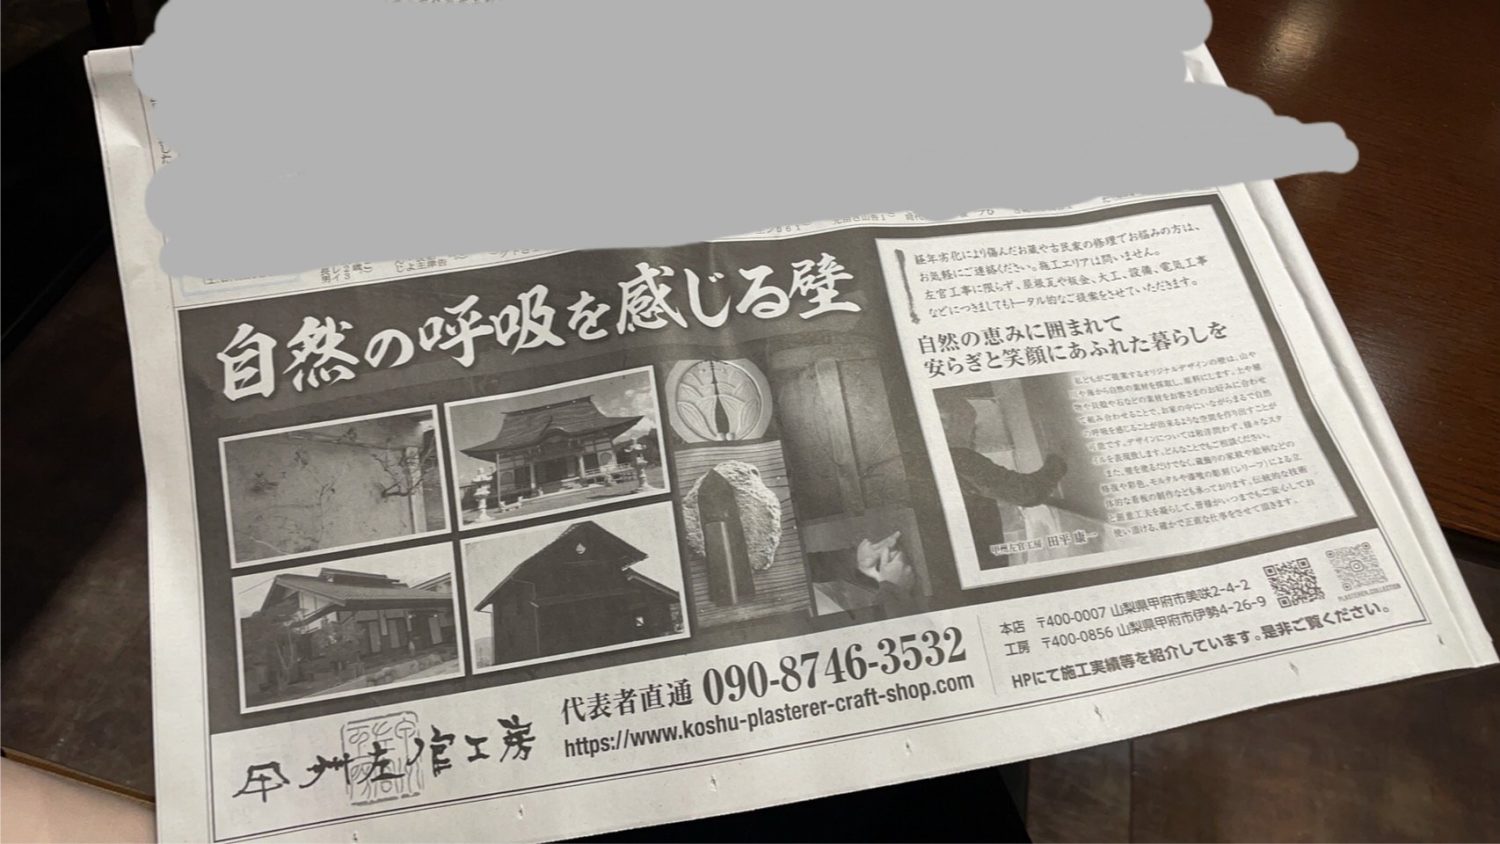 産経新聞さんに広告を掲載していただきました。